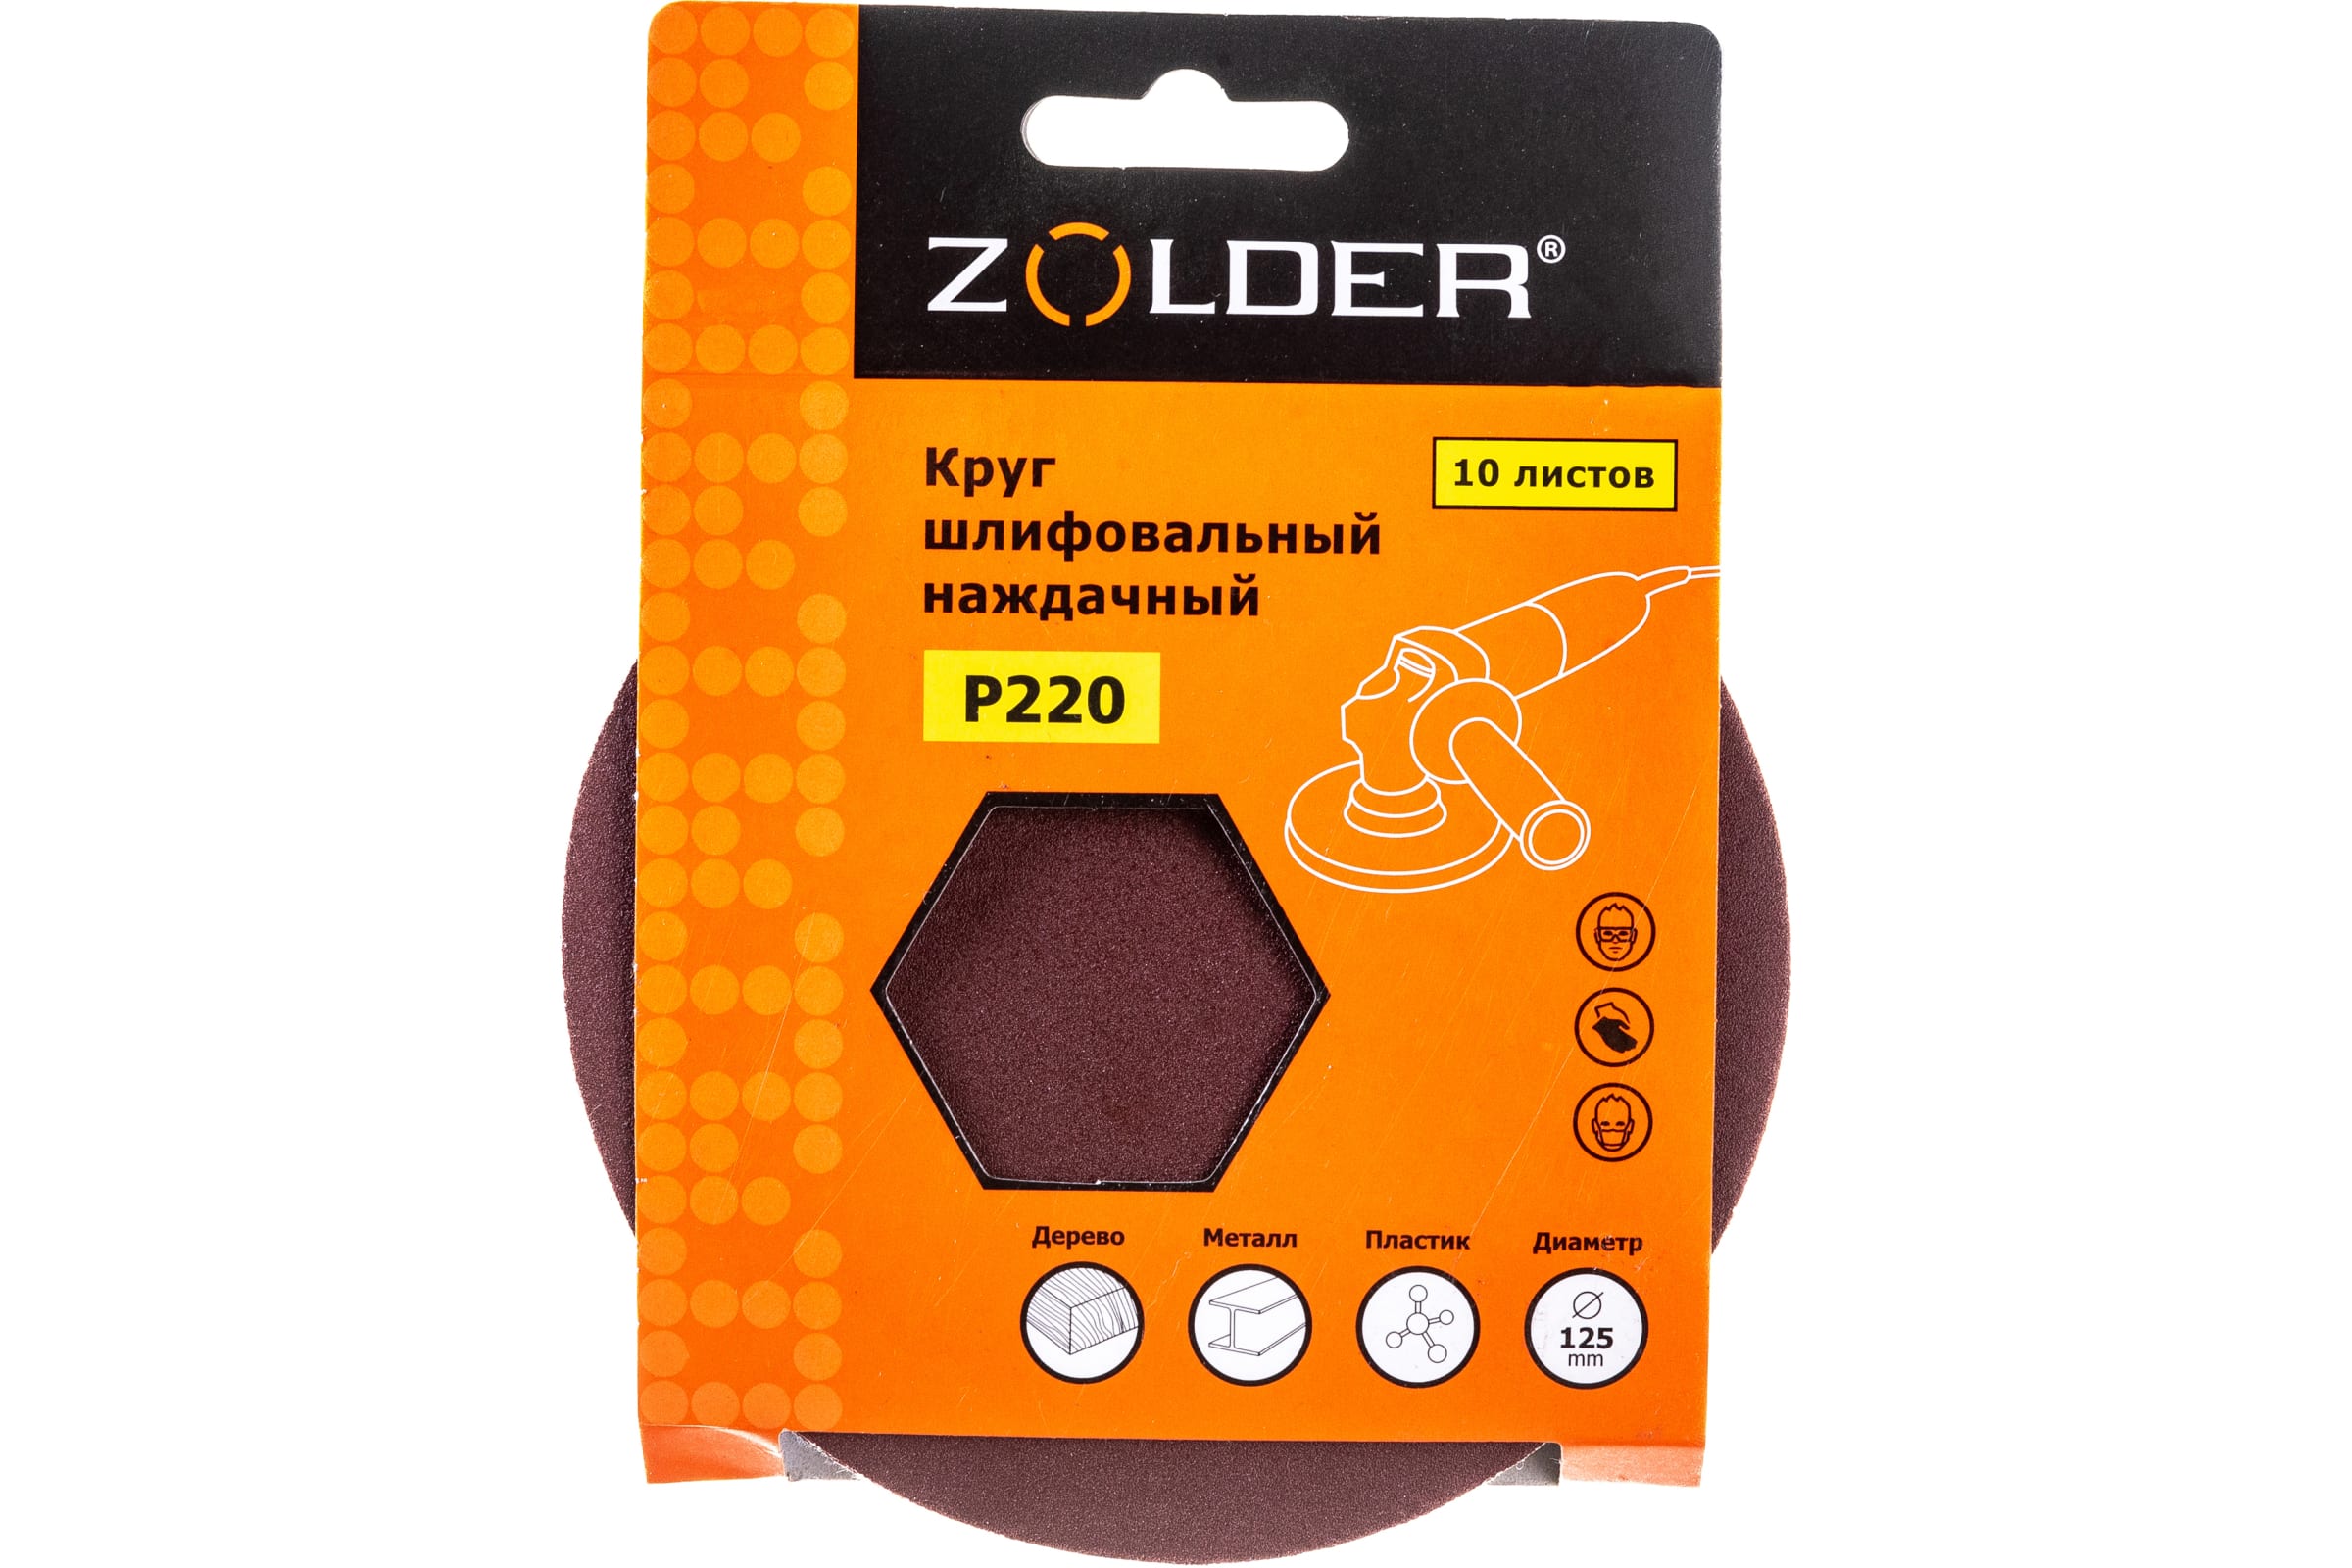 ZOLDER Круги шлифовальные наждачные 10шт/ P220, 125 мм / Z-108-220 наждачные круги шлифовальные zolder